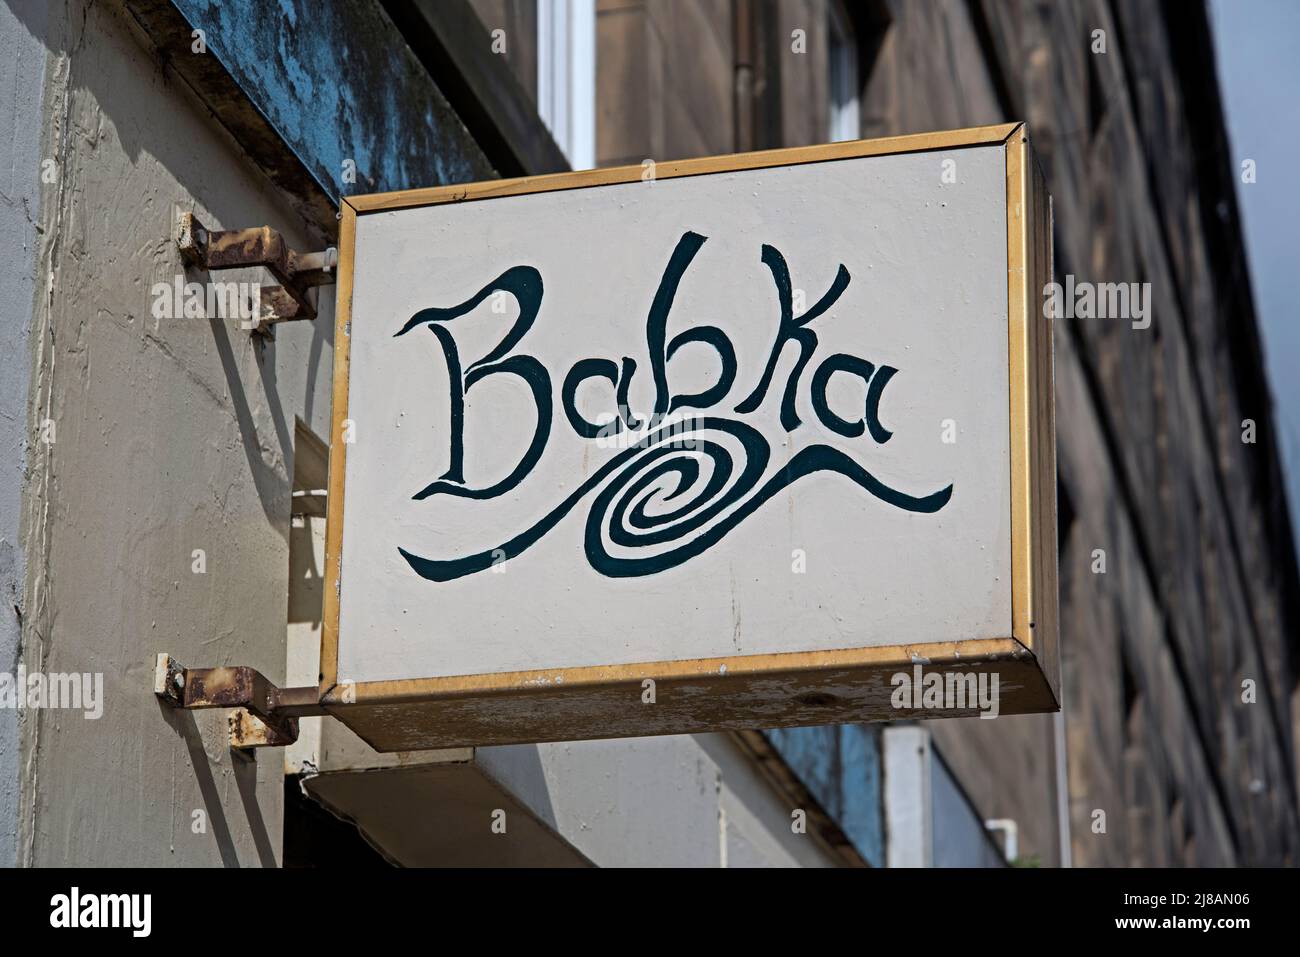 Babka sign outside an artisan bakery in Edinburgh, Scotland, UK Stock Photo